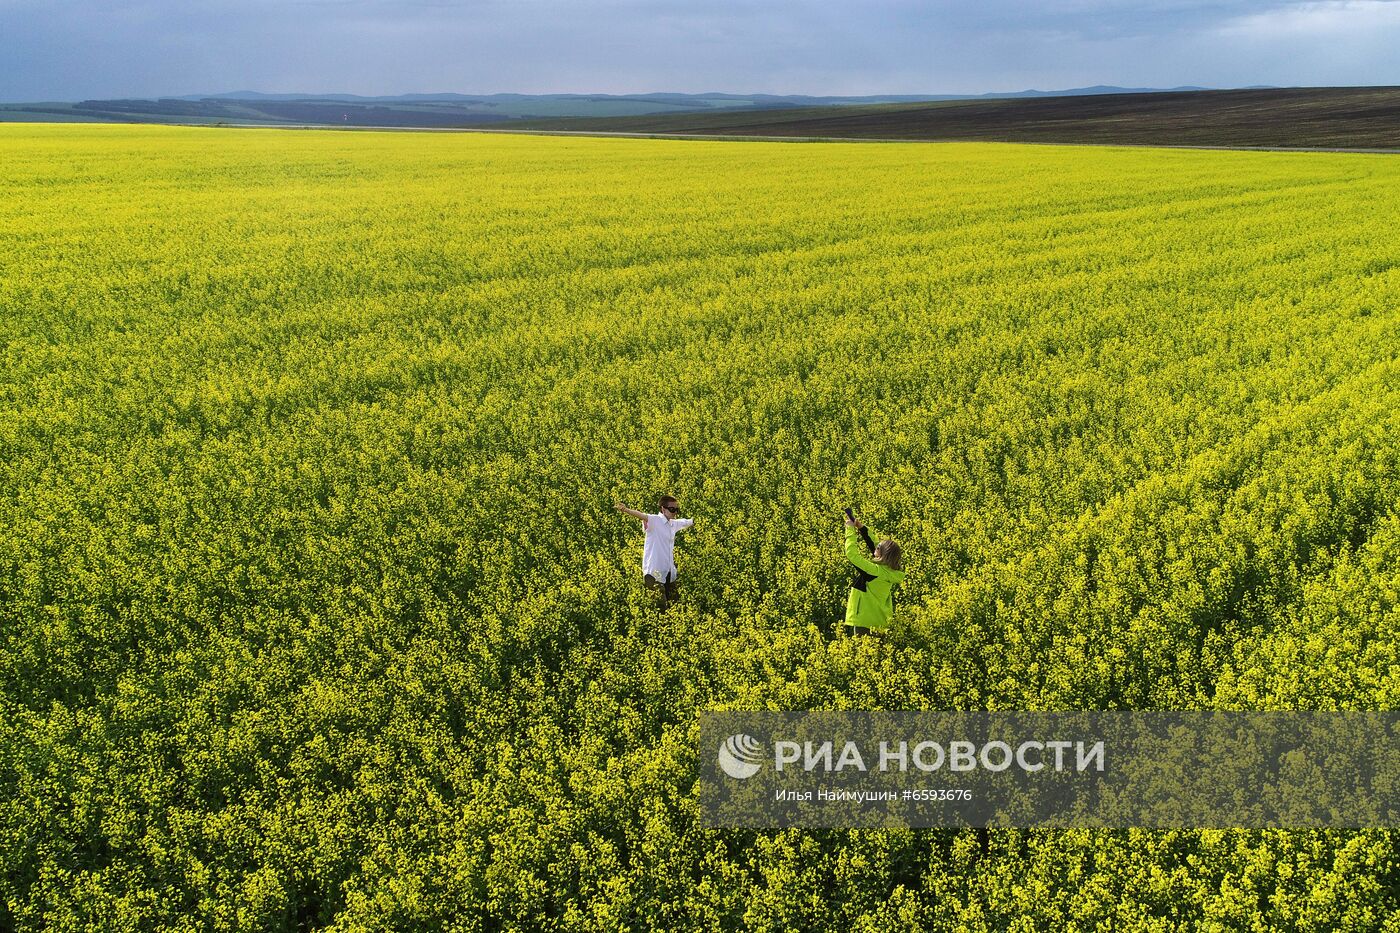 Рапсовые поля в Красноярском крае